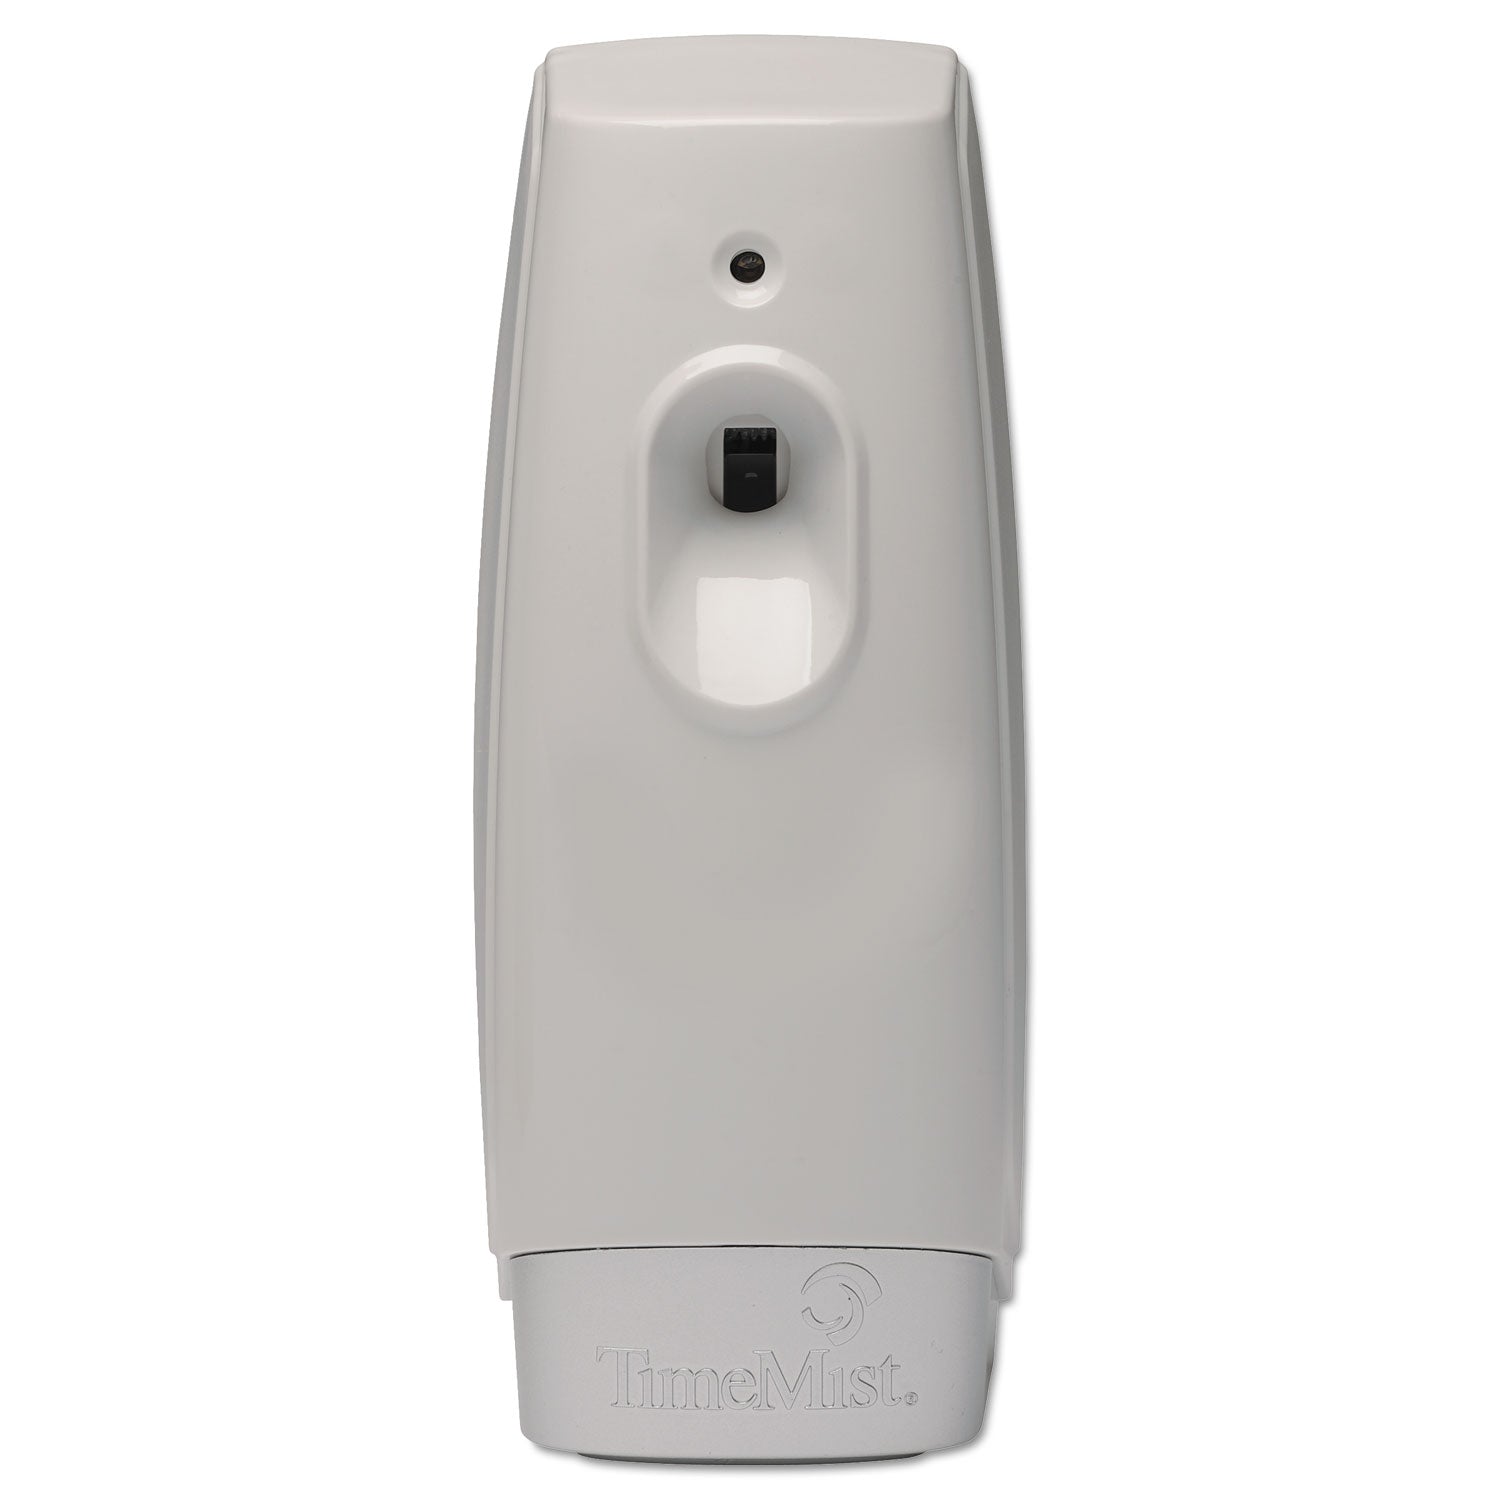 Settings Metered Air Freshener Dispenser, 3.4" x 3.4" x 8.25", White - 